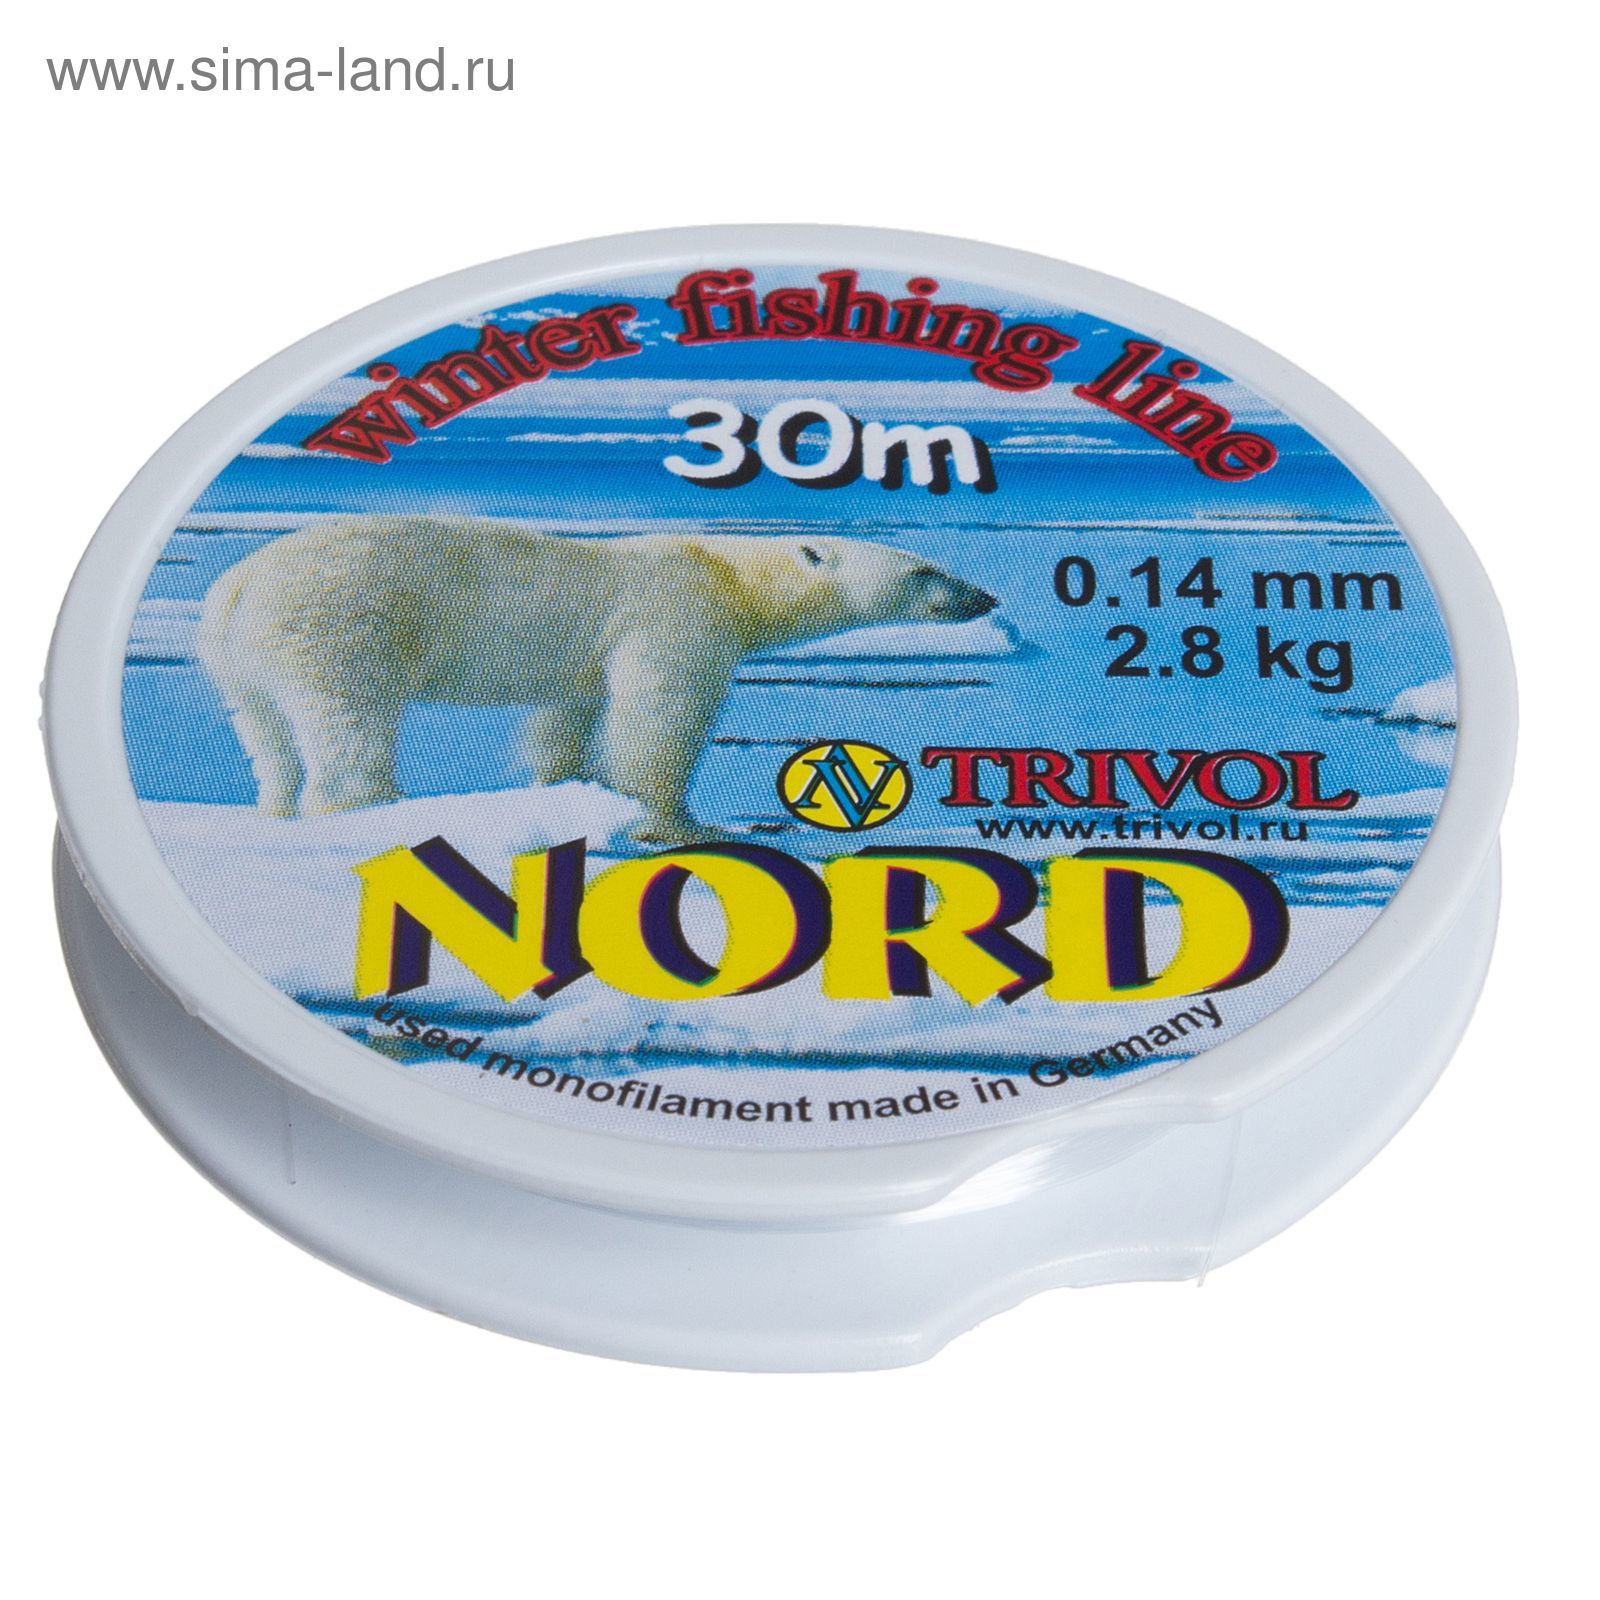 Леска Nord-1, 30 м, d=0,14 мм